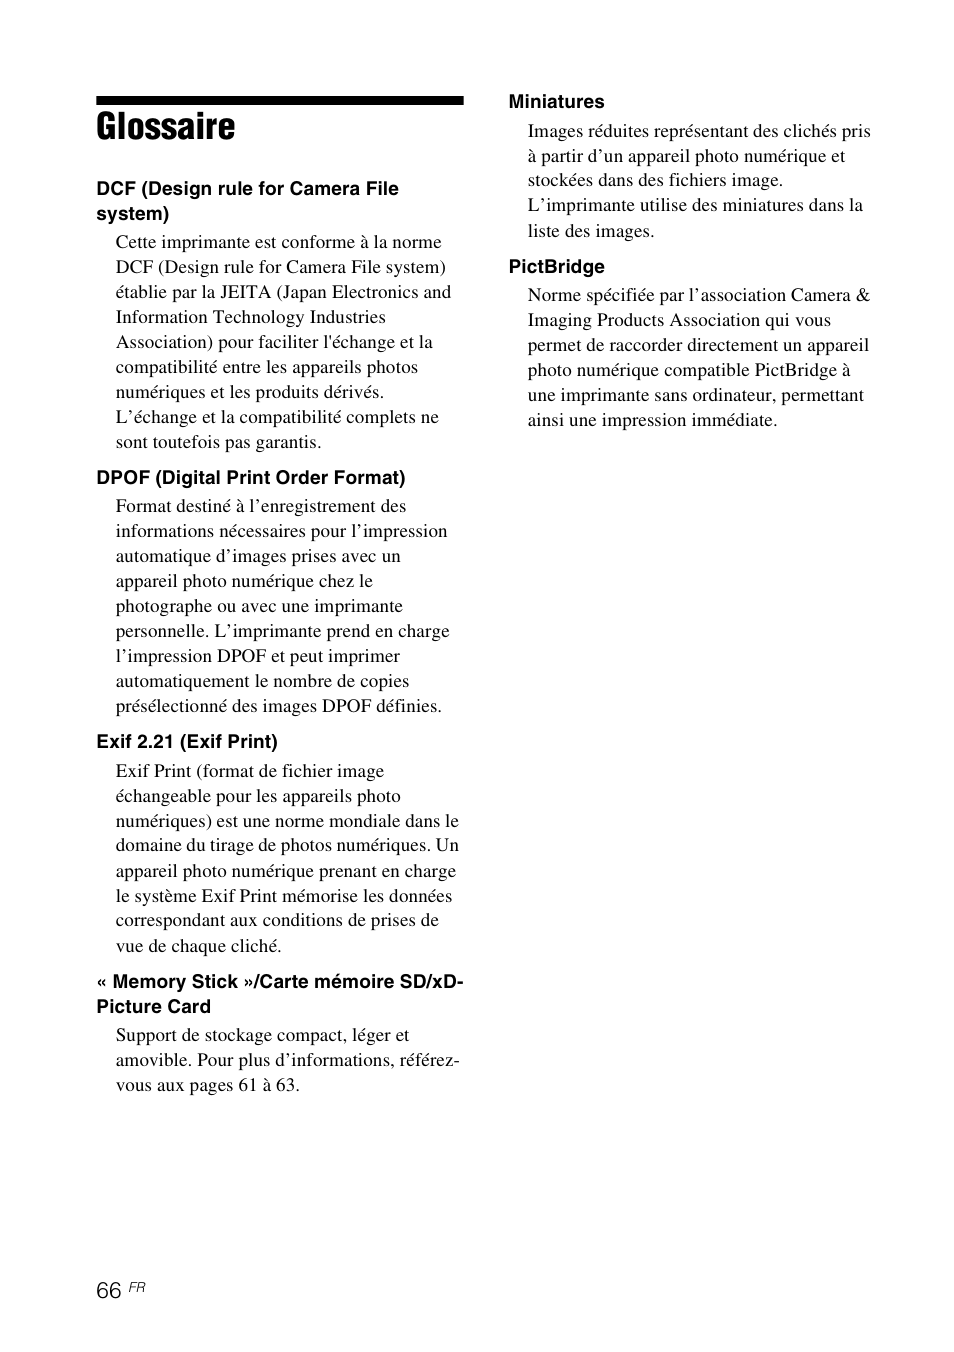 Glossaire | Sony DPP-FP65 Manuel d'utilisation | Page 66 / 72